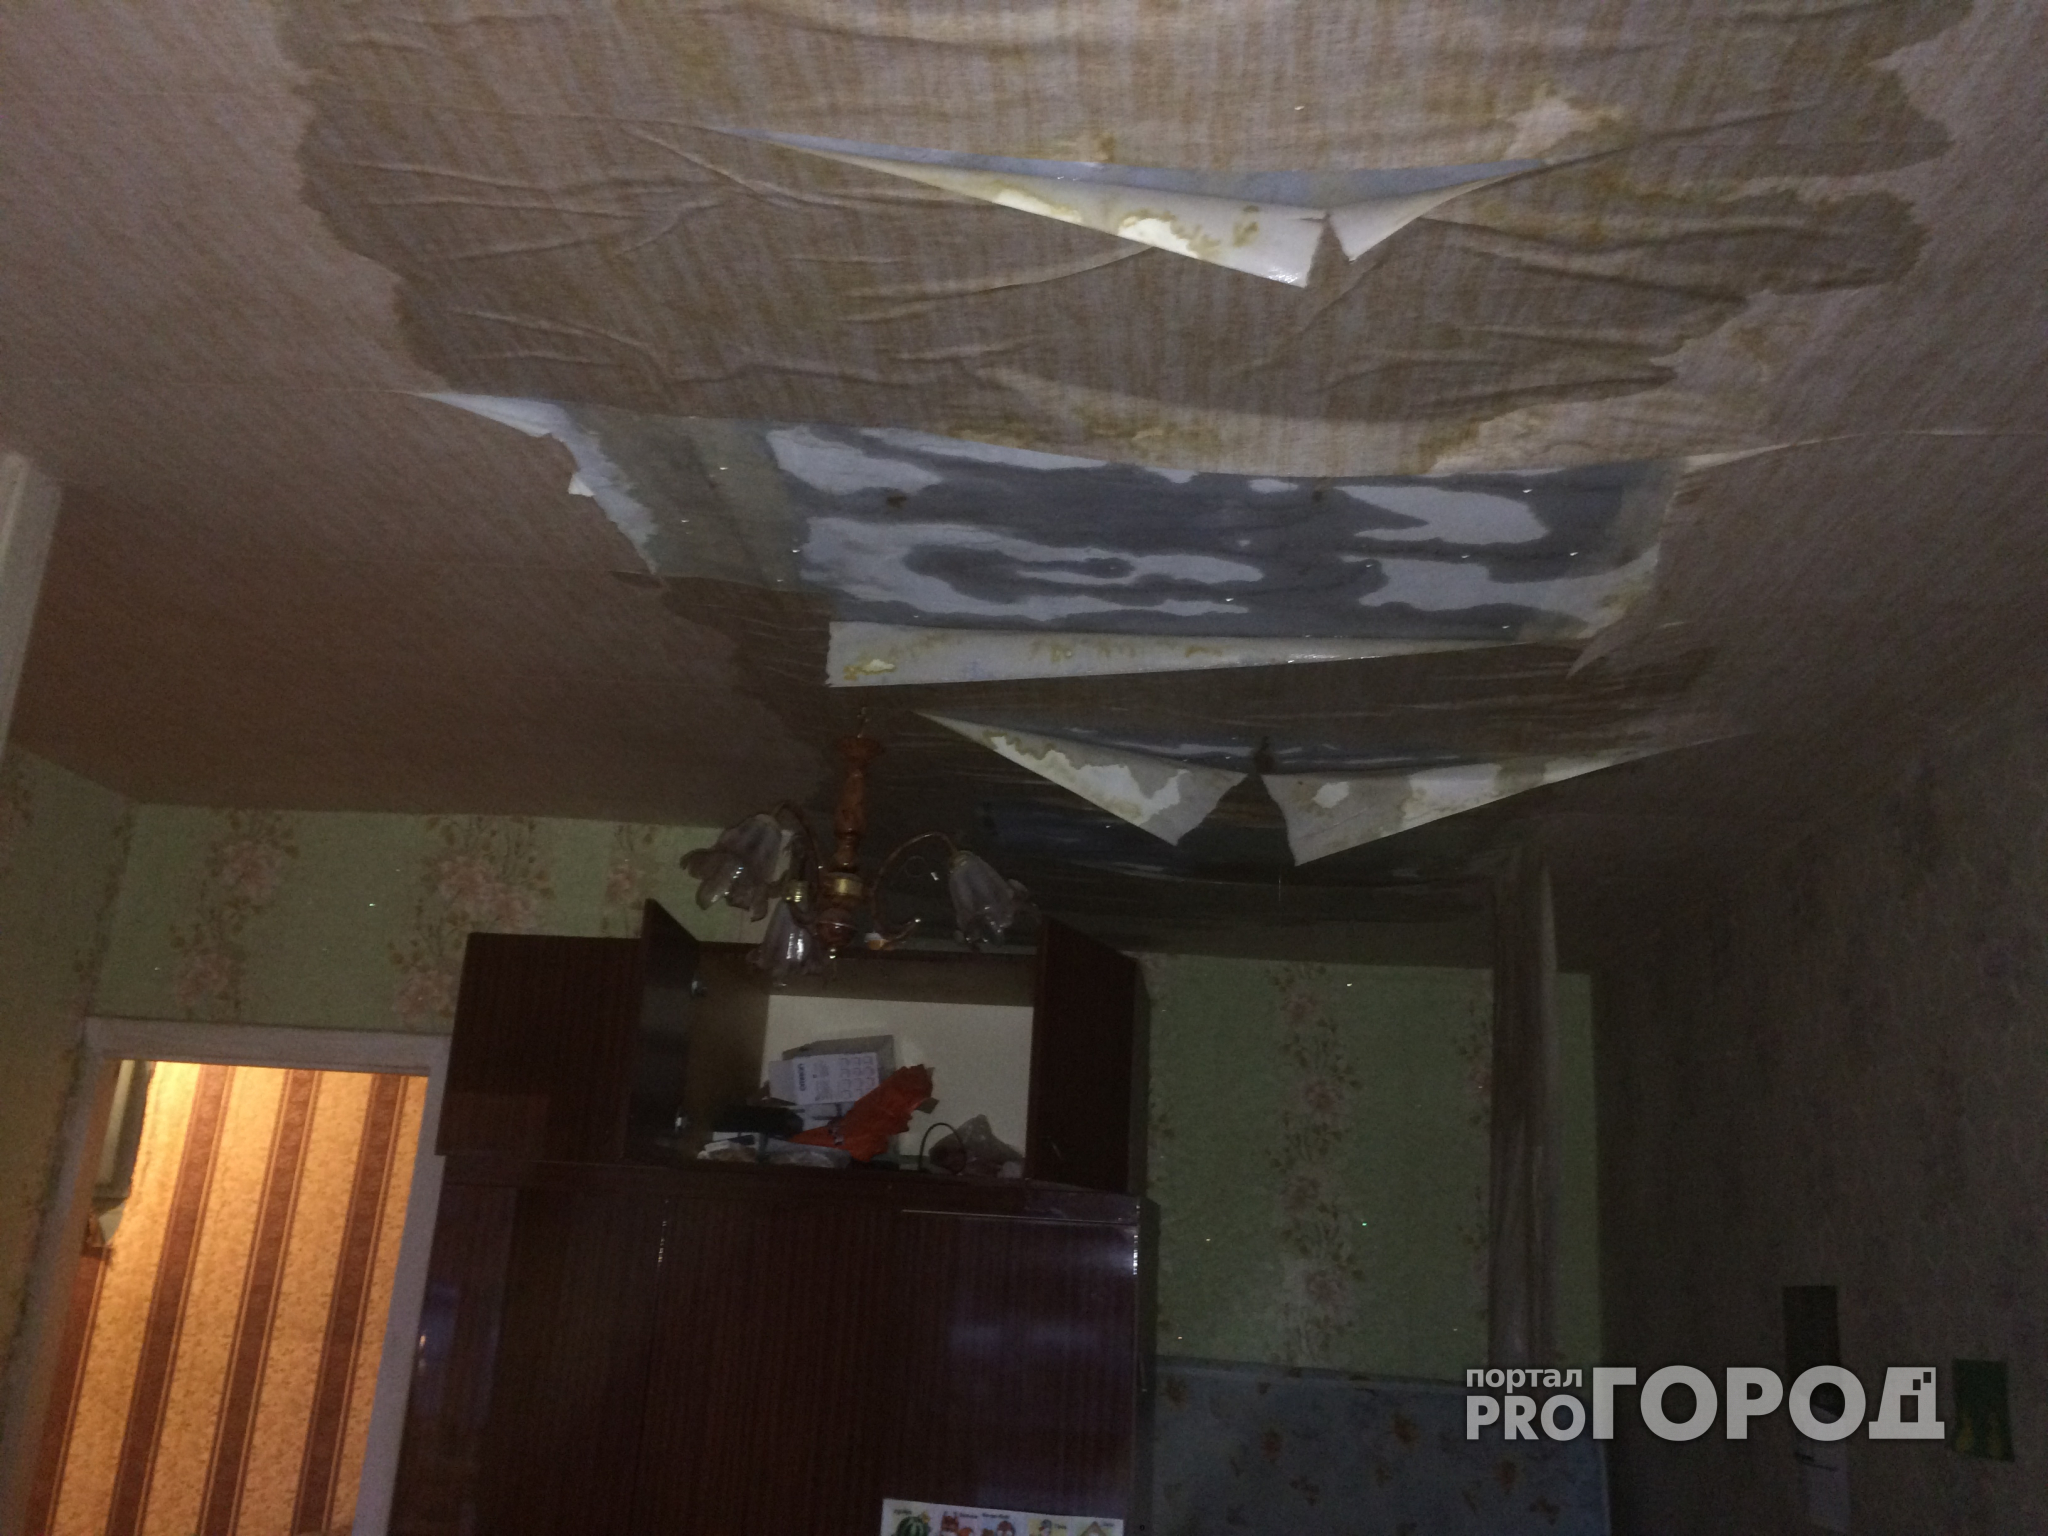 Йошкаролинцы вылили из квартиры 200 литров воды из-за протекающей крыши